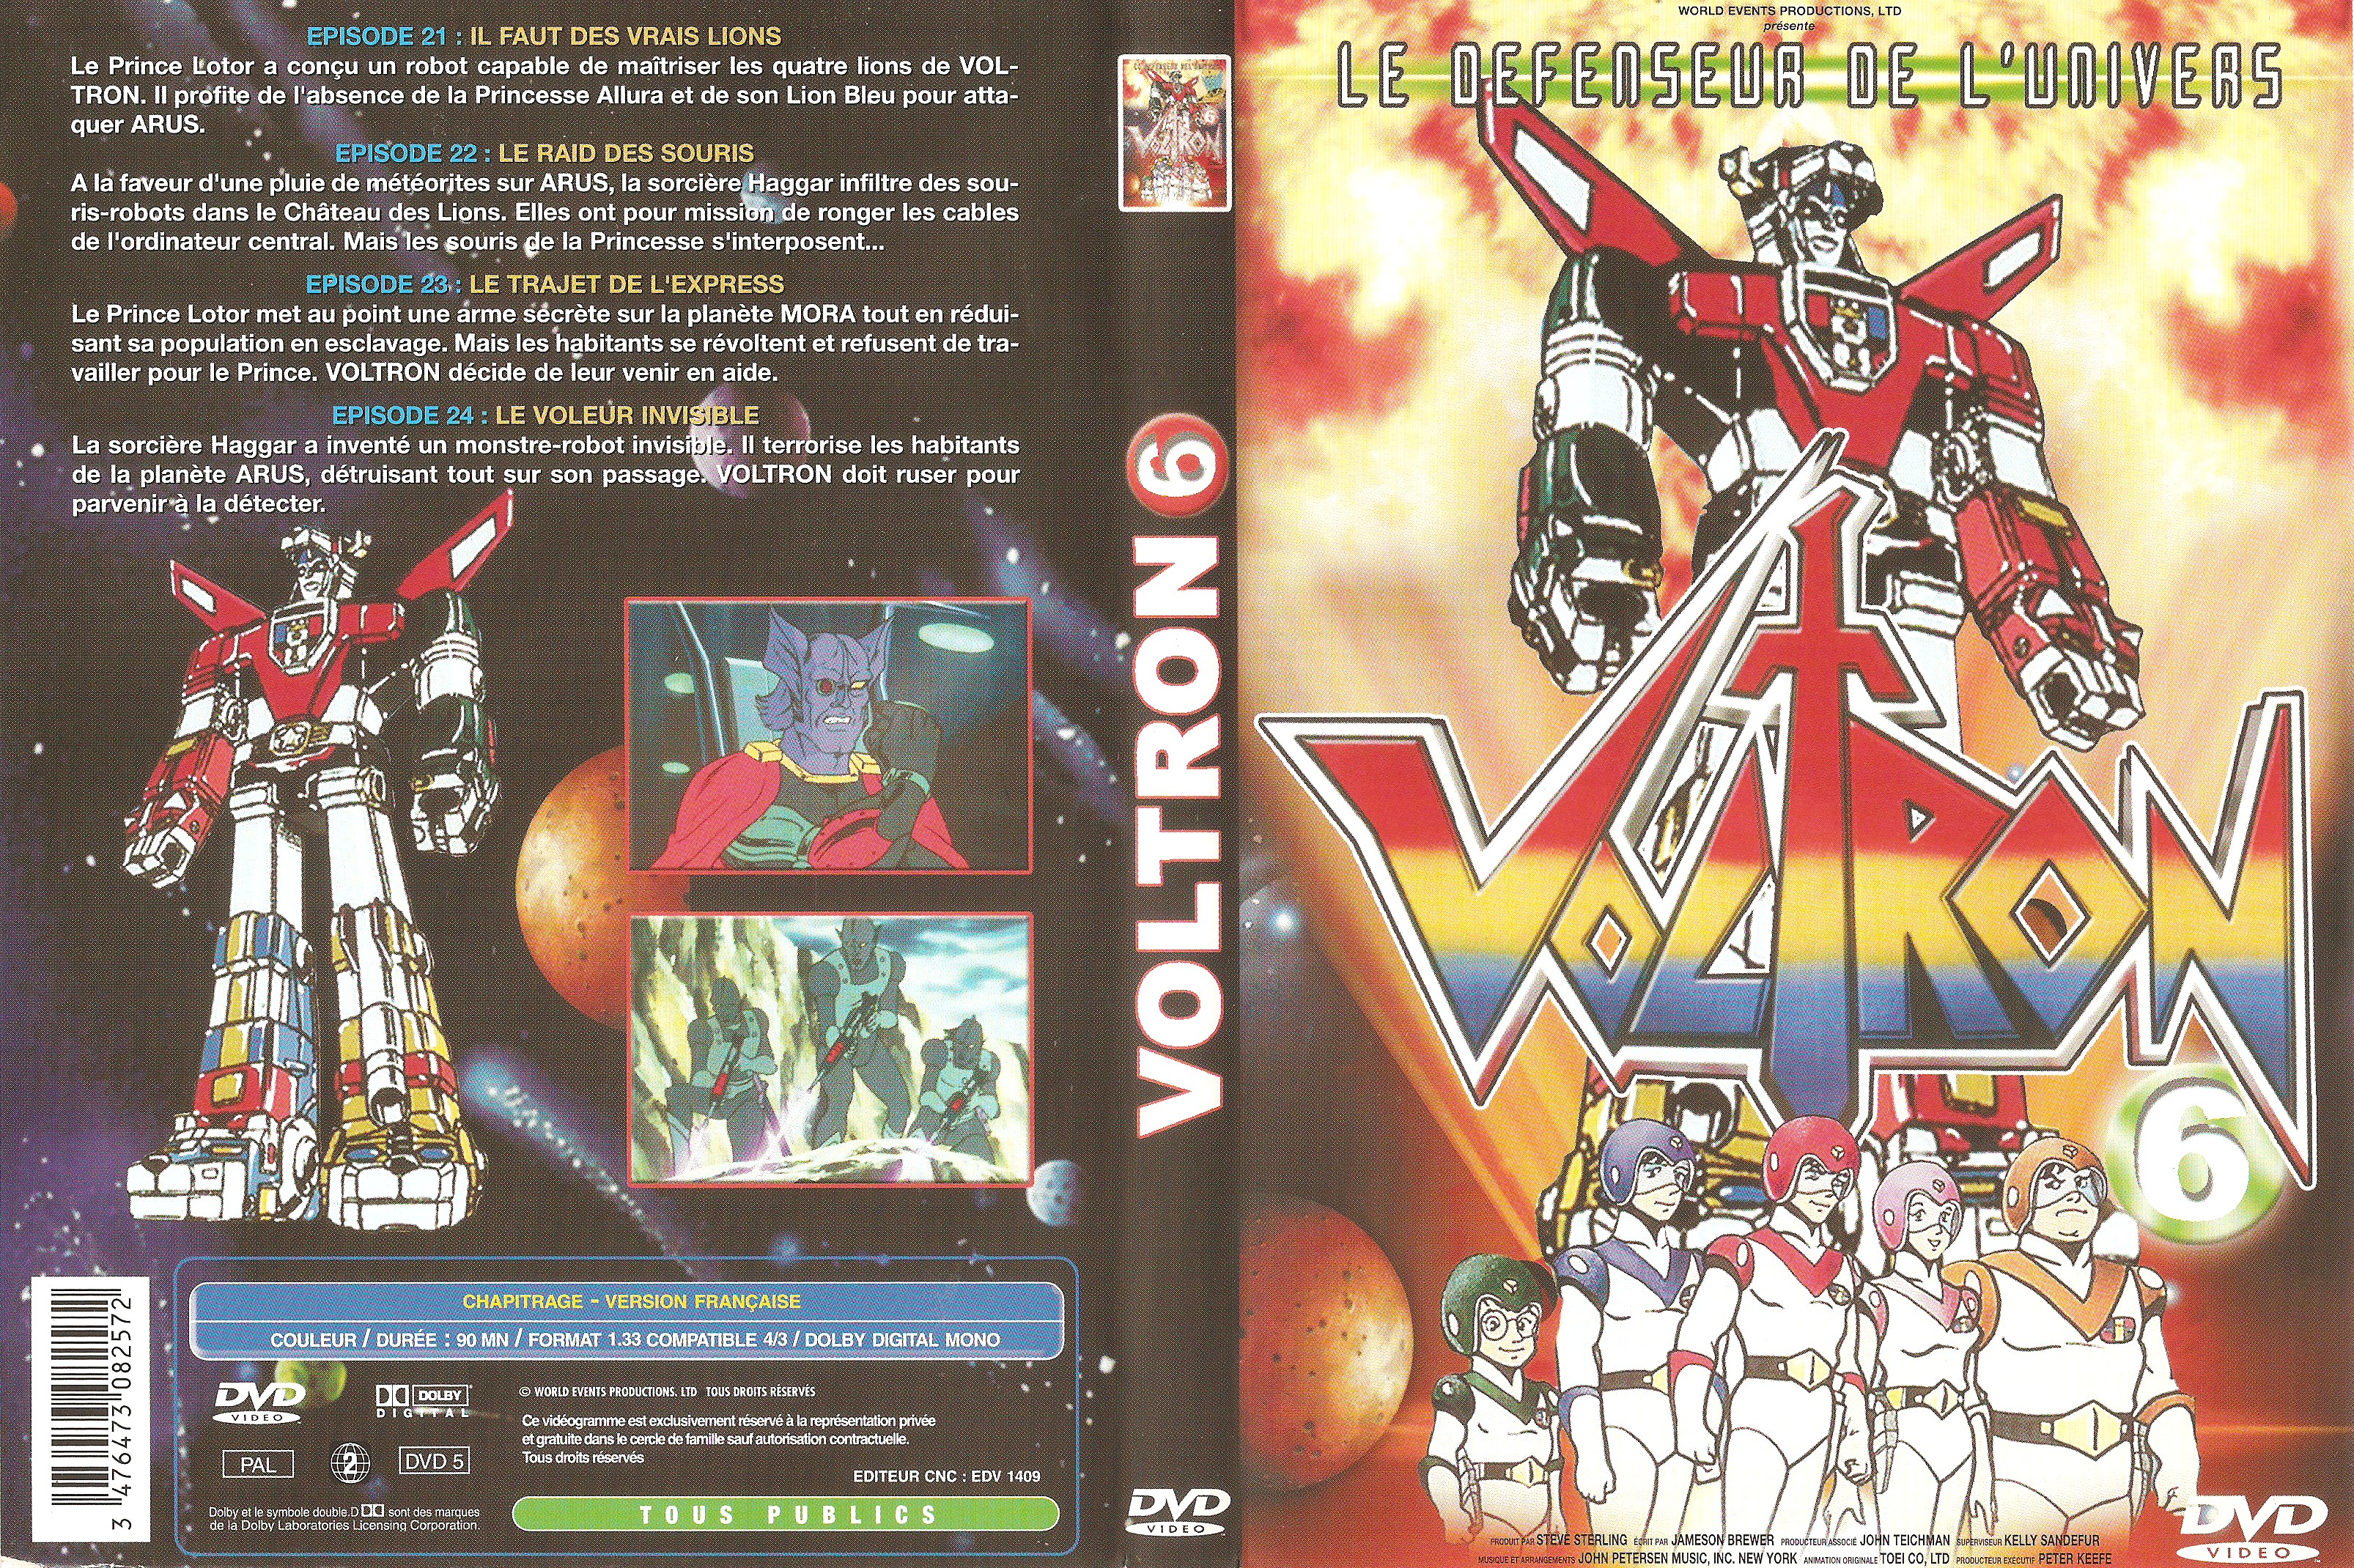 Jaquette DVD Voltron Vol 06